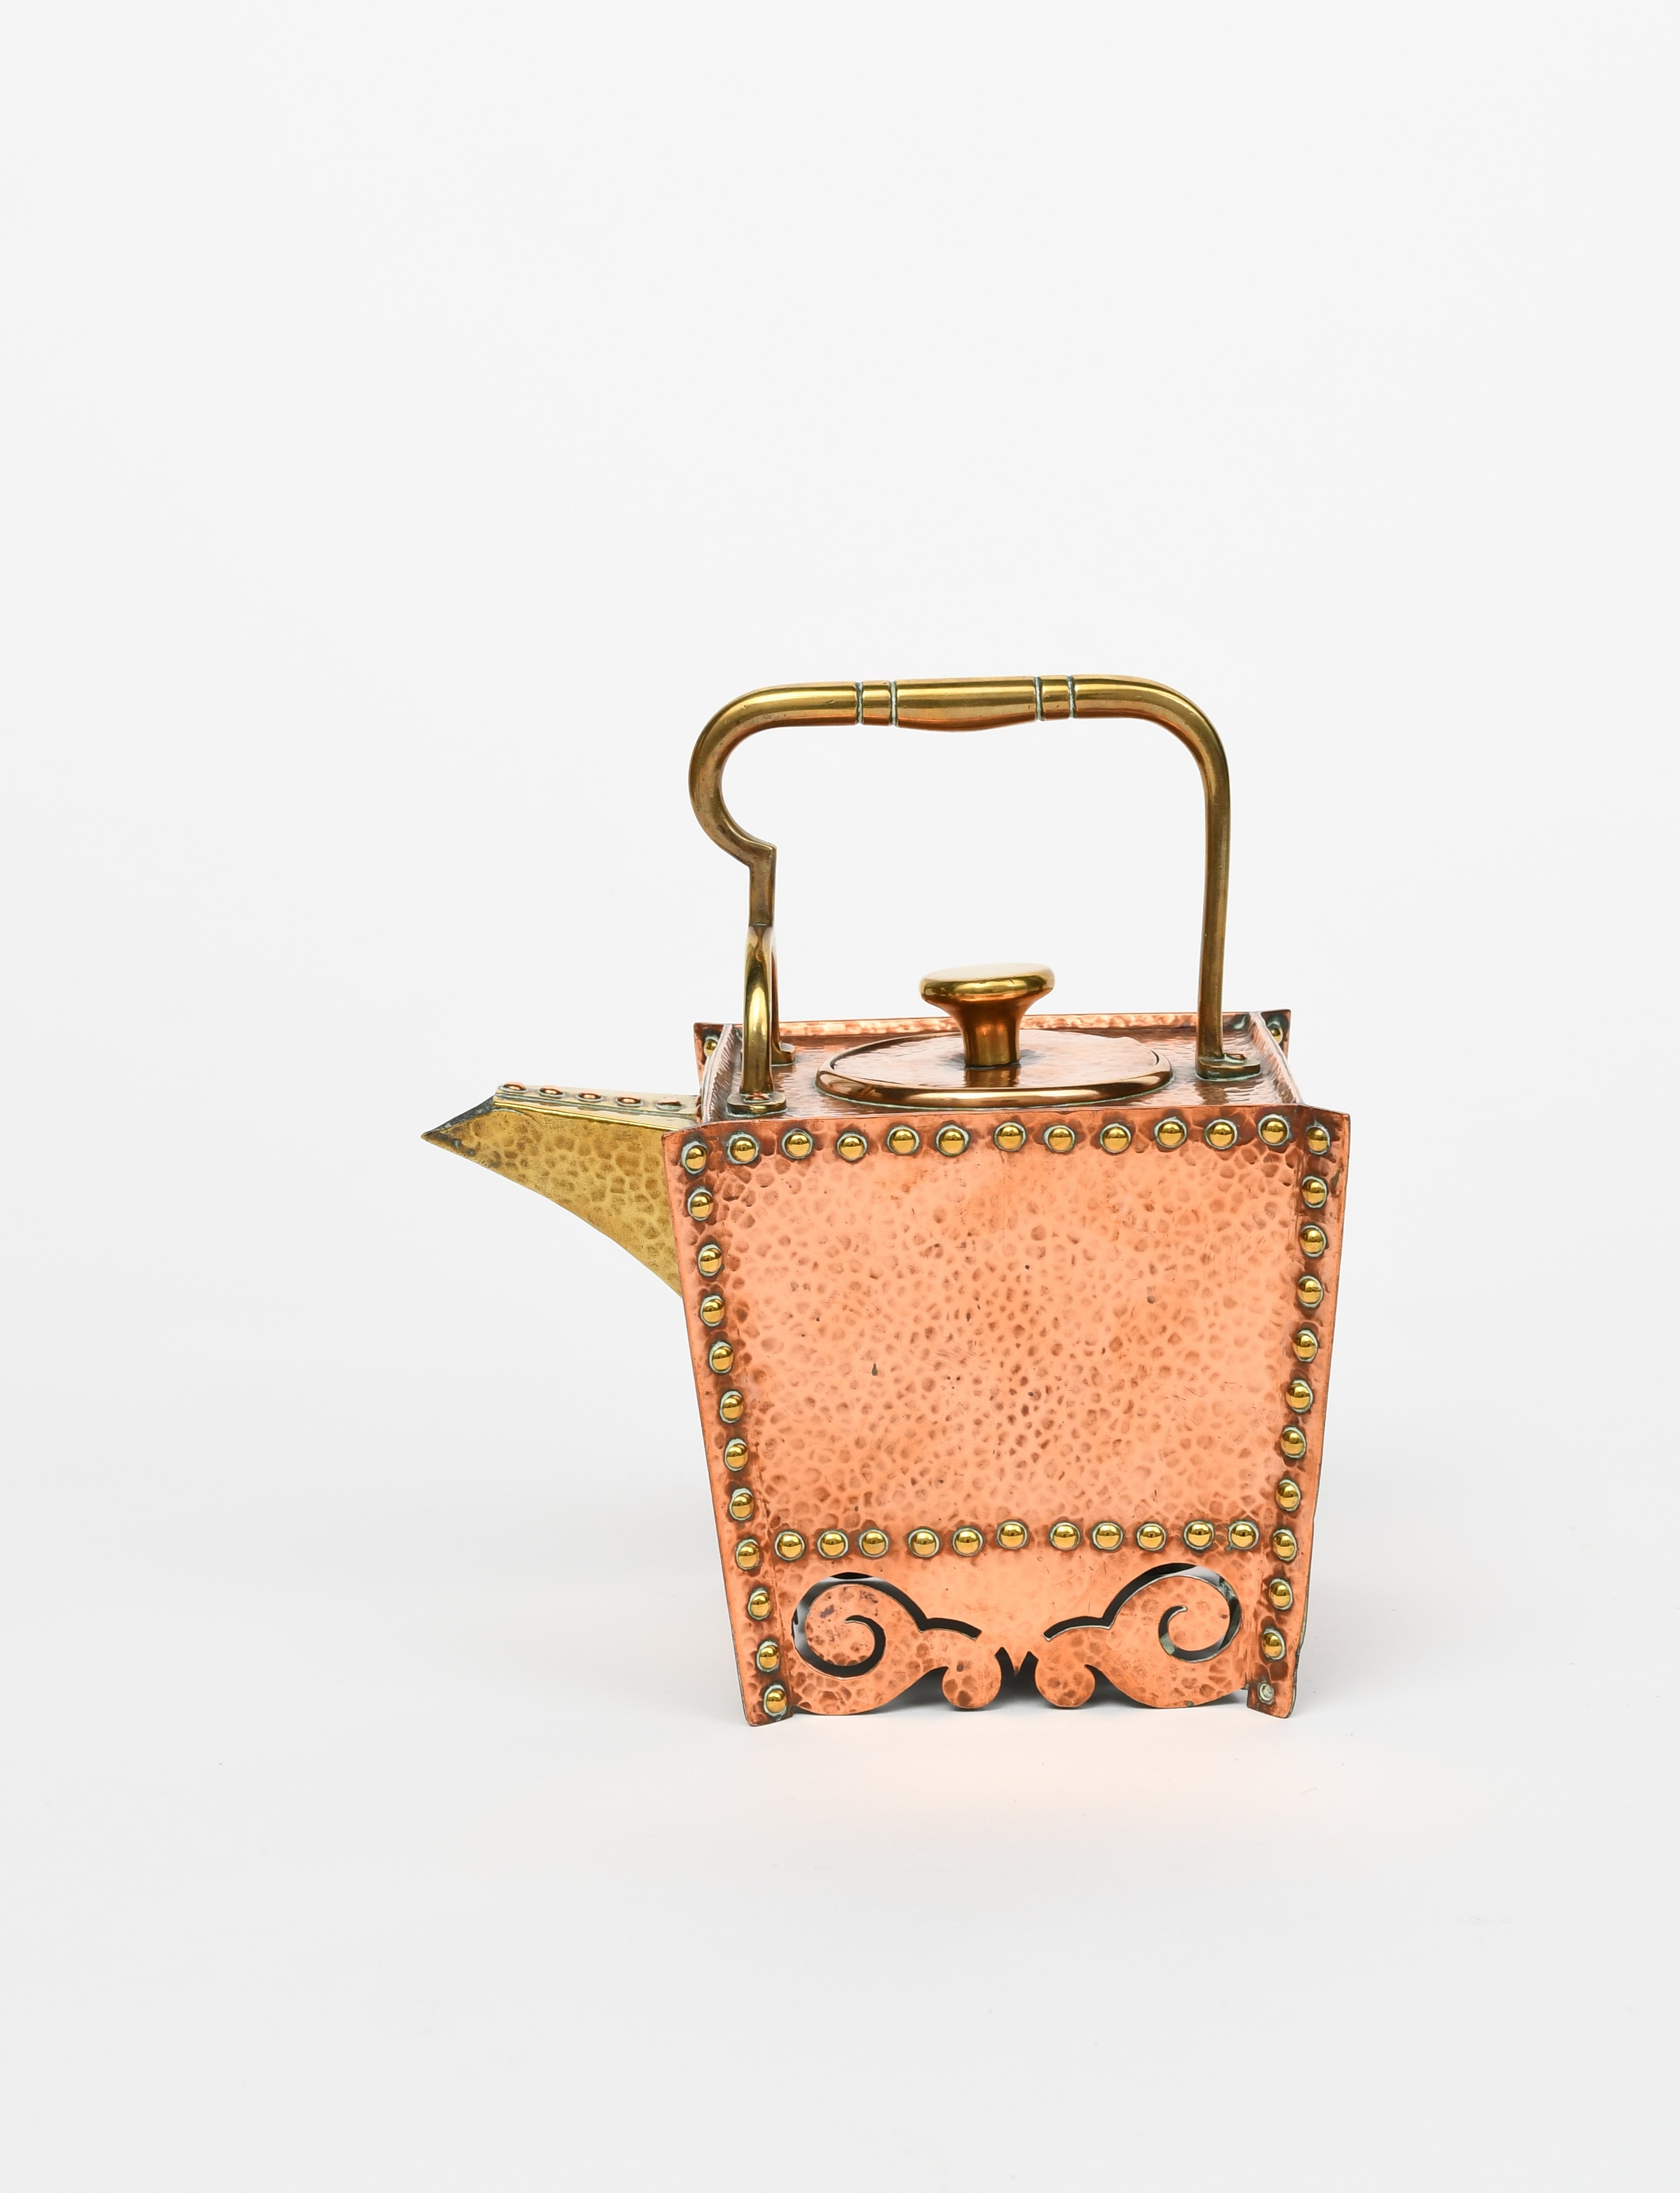 Christopher Dresser | A Benham & Froud copper and brass tea kettle and ...